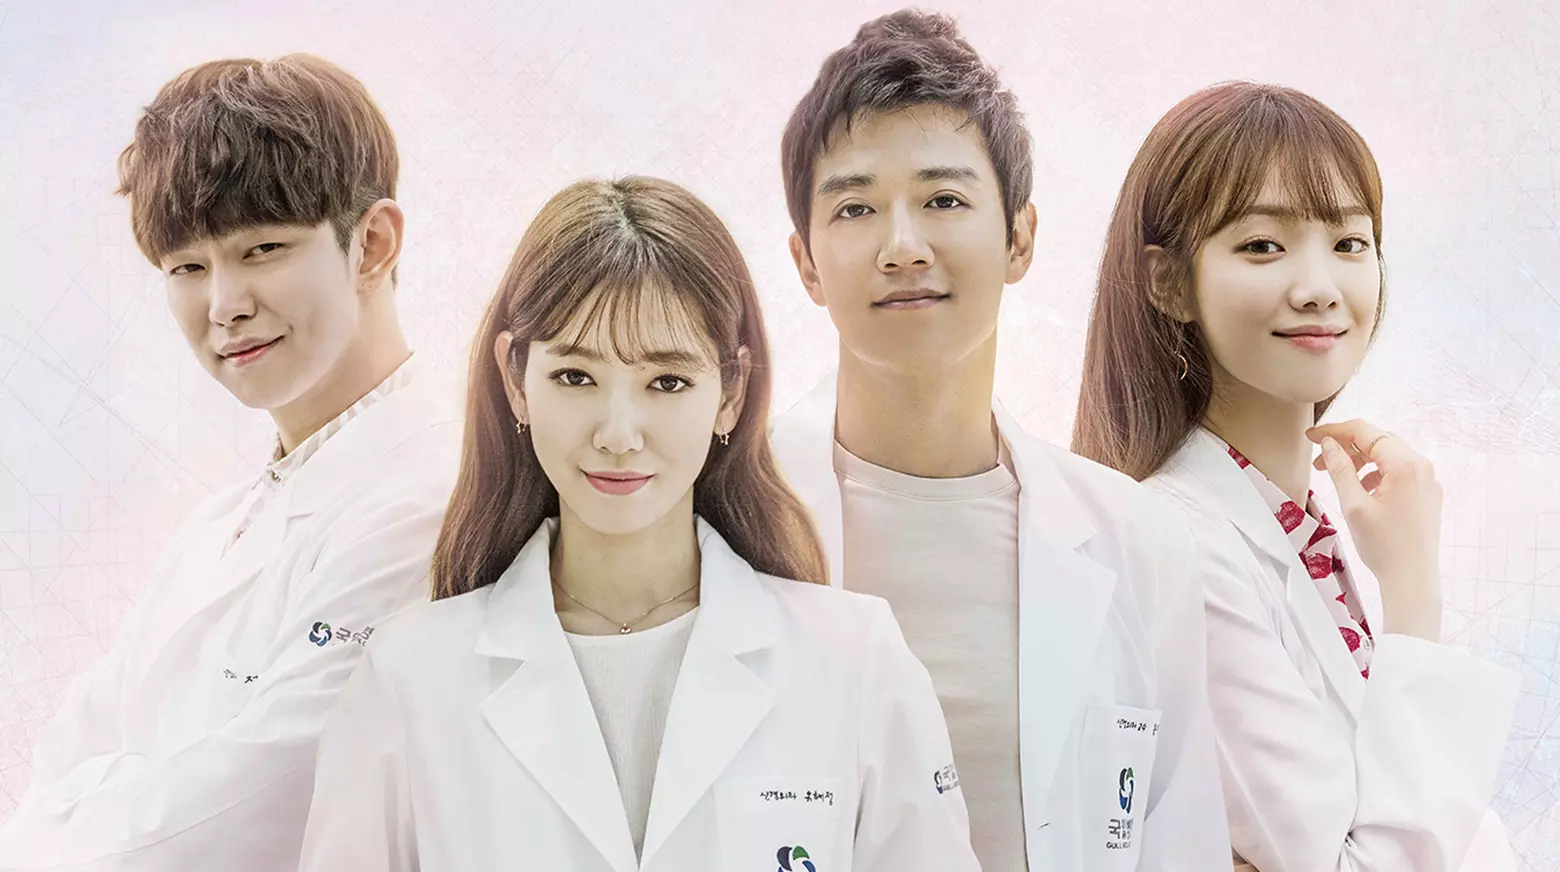 بهترین فیلم و سریال های پارک شین هه ؛ پزشکان - Doctors (2016)